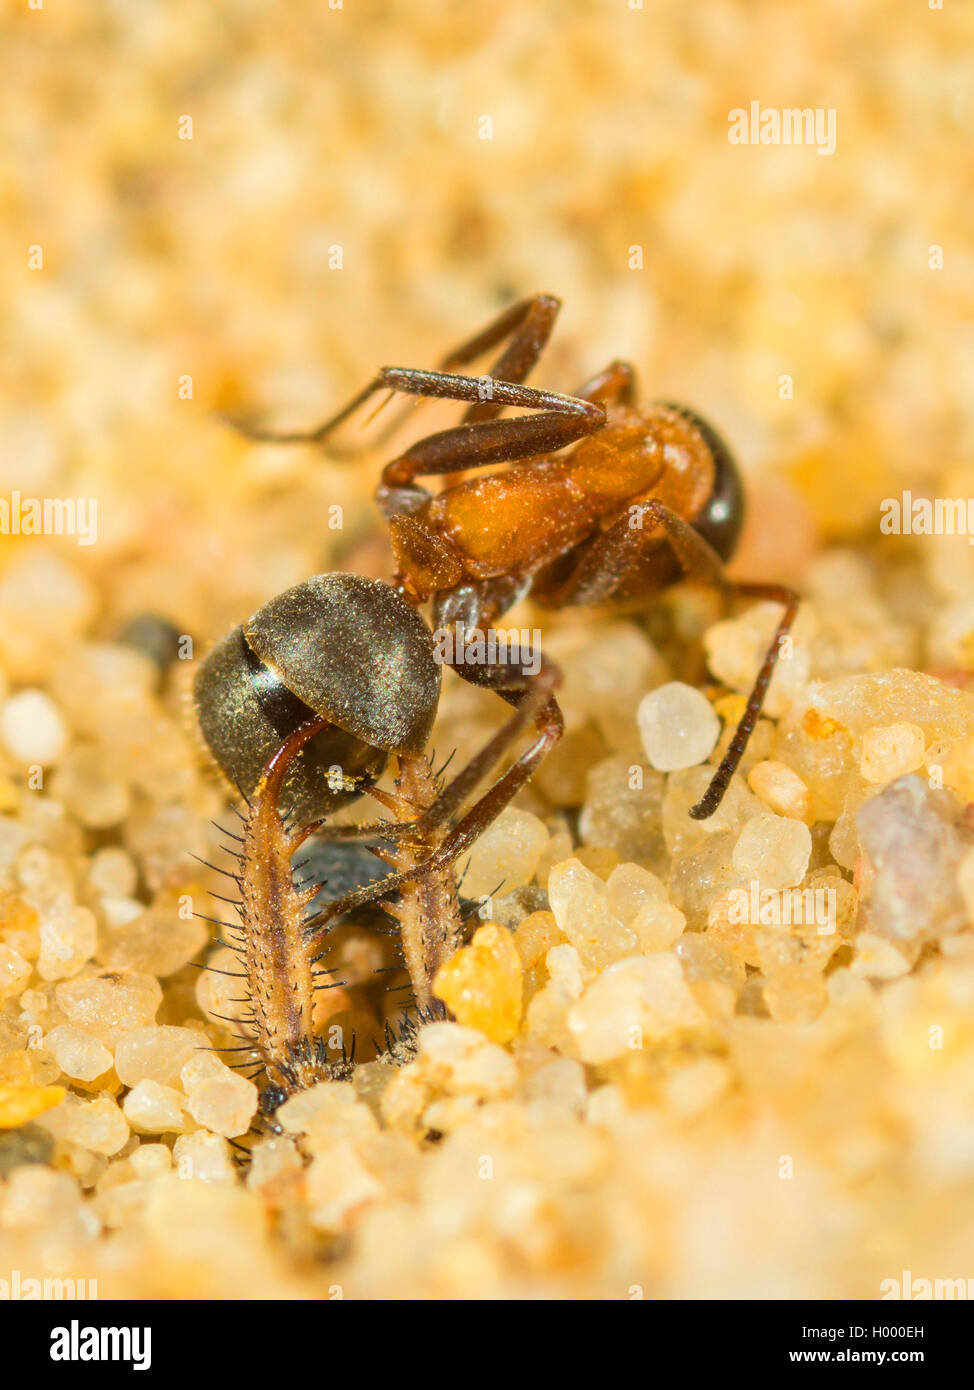 Europäische antlion (Euroleon nostras), ausgereifte Antlion saugt aus einem erfassten Ant (Formica rufibarbis) am Grund des konischen Grube, Deutschland Stockfoto